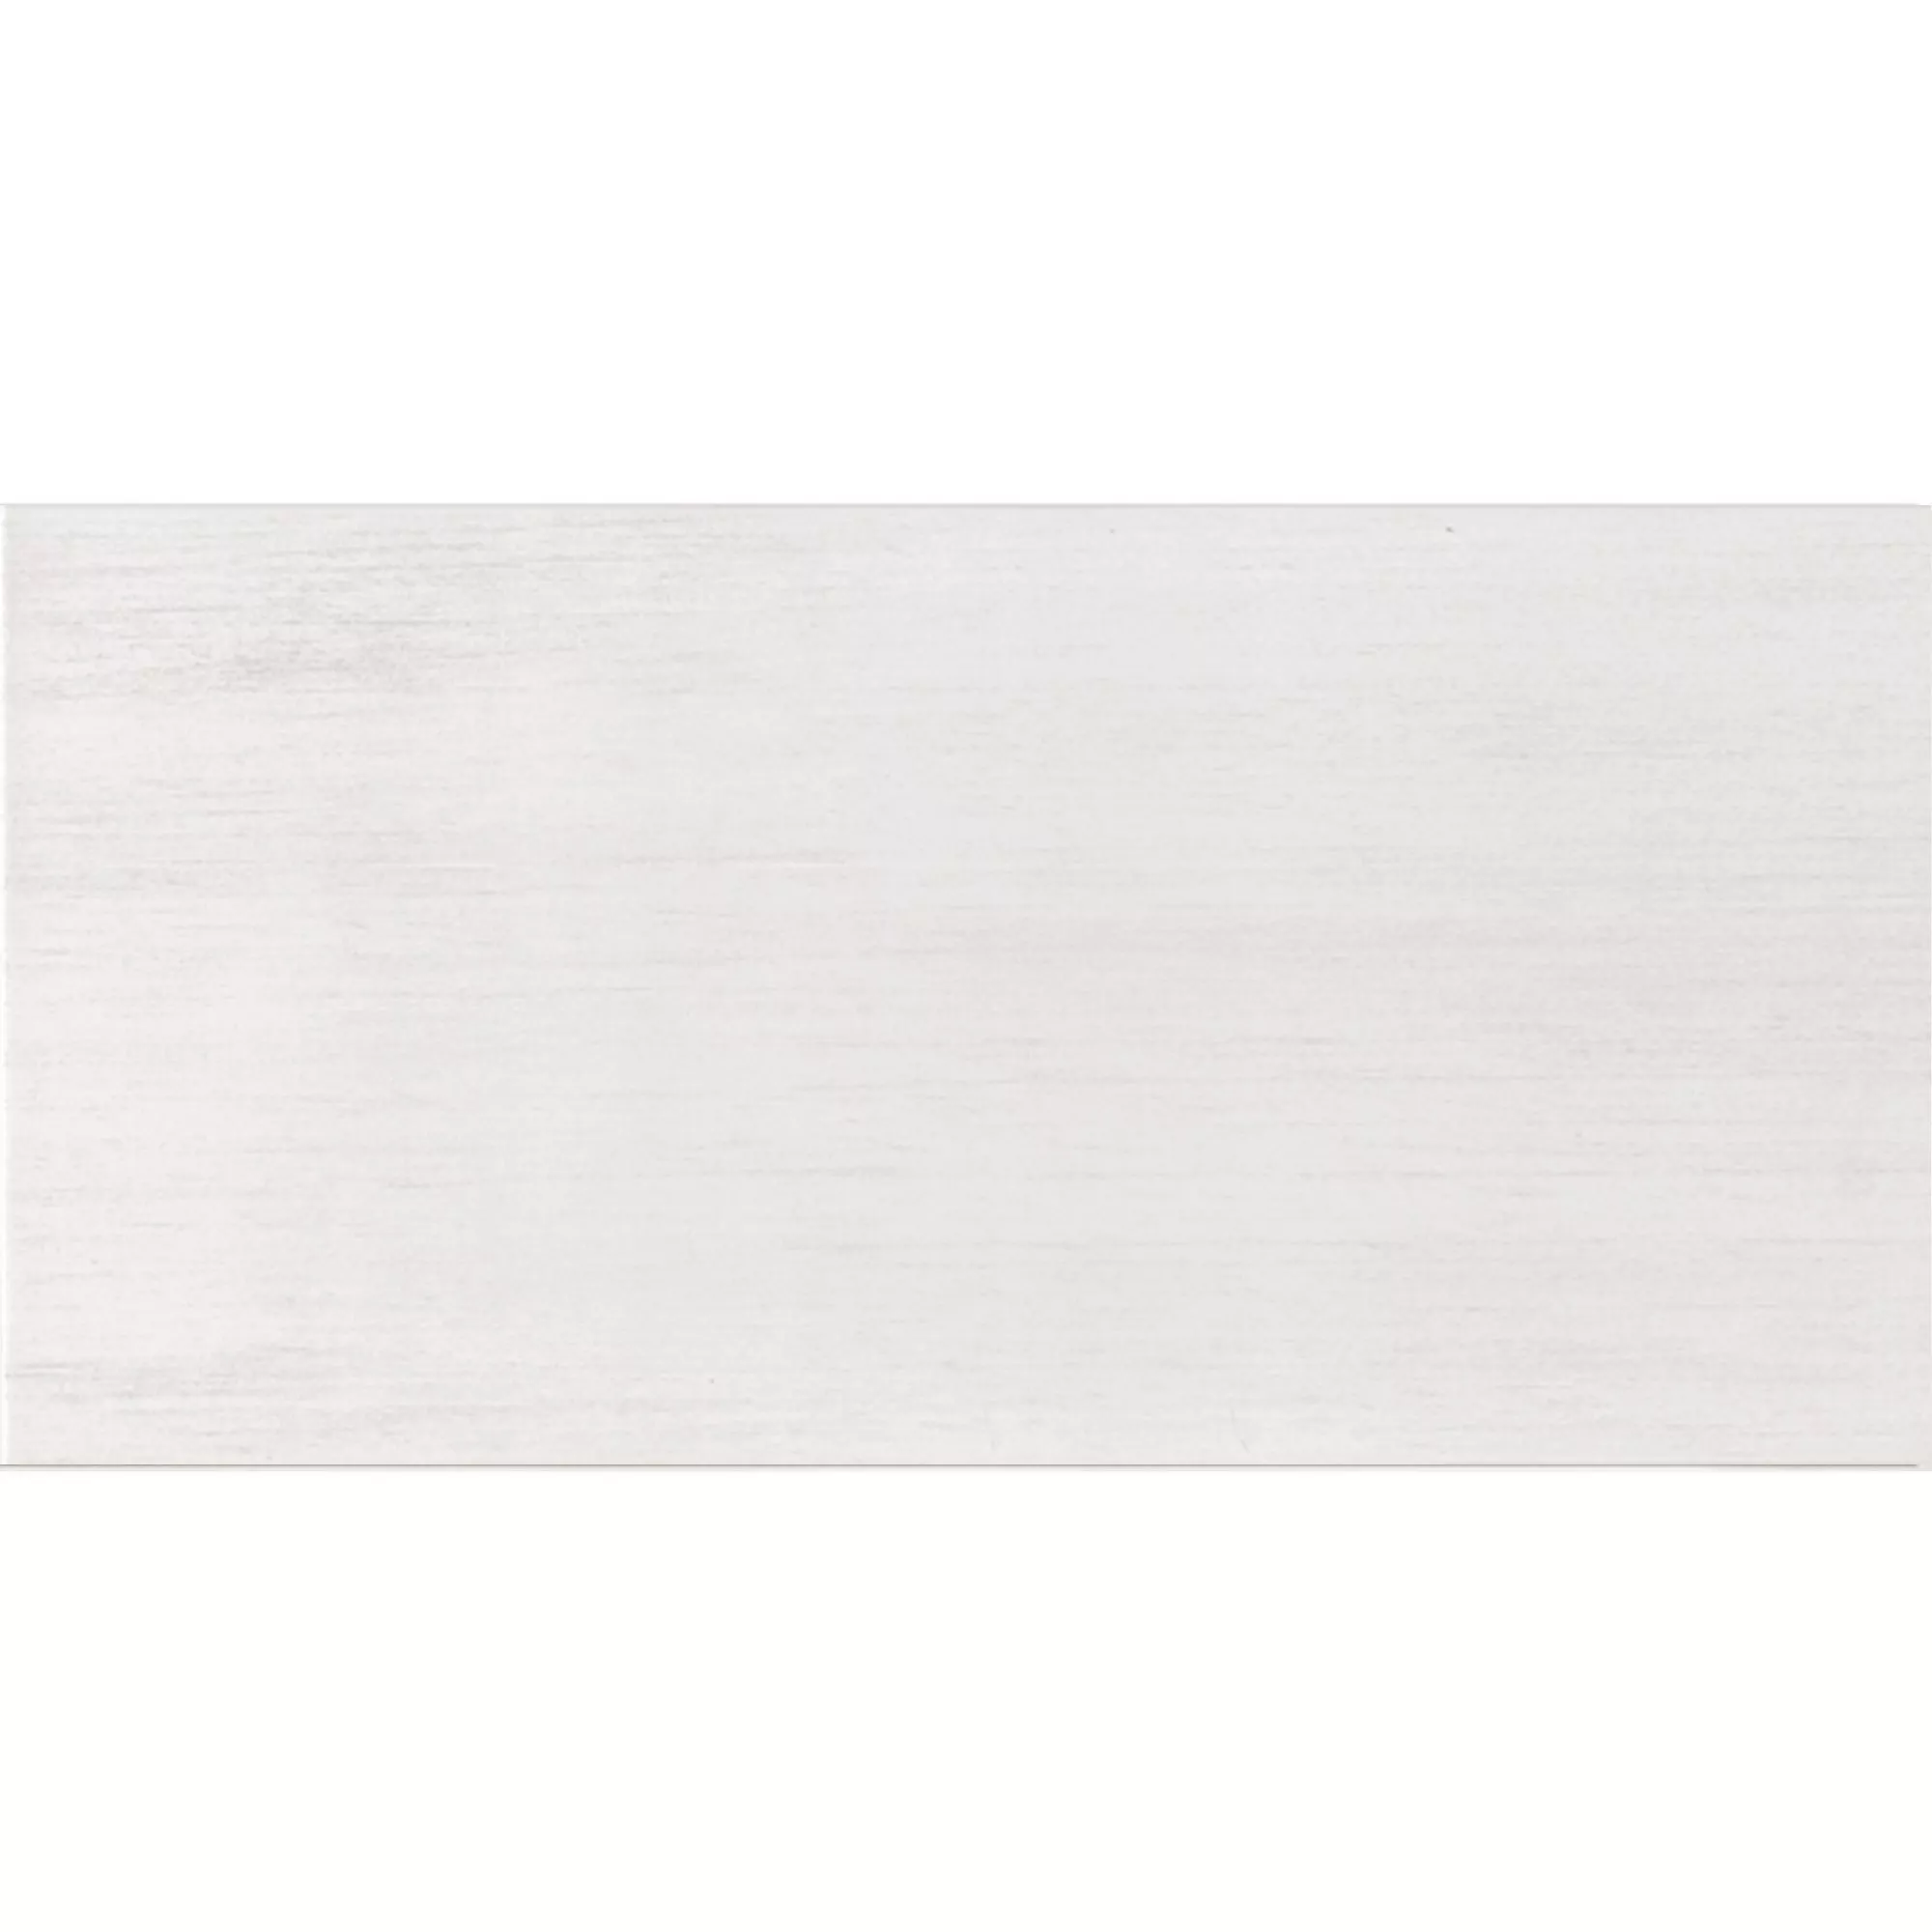 Πλακάκι Tοίχου Meyrin Ασπρο 30x60cm